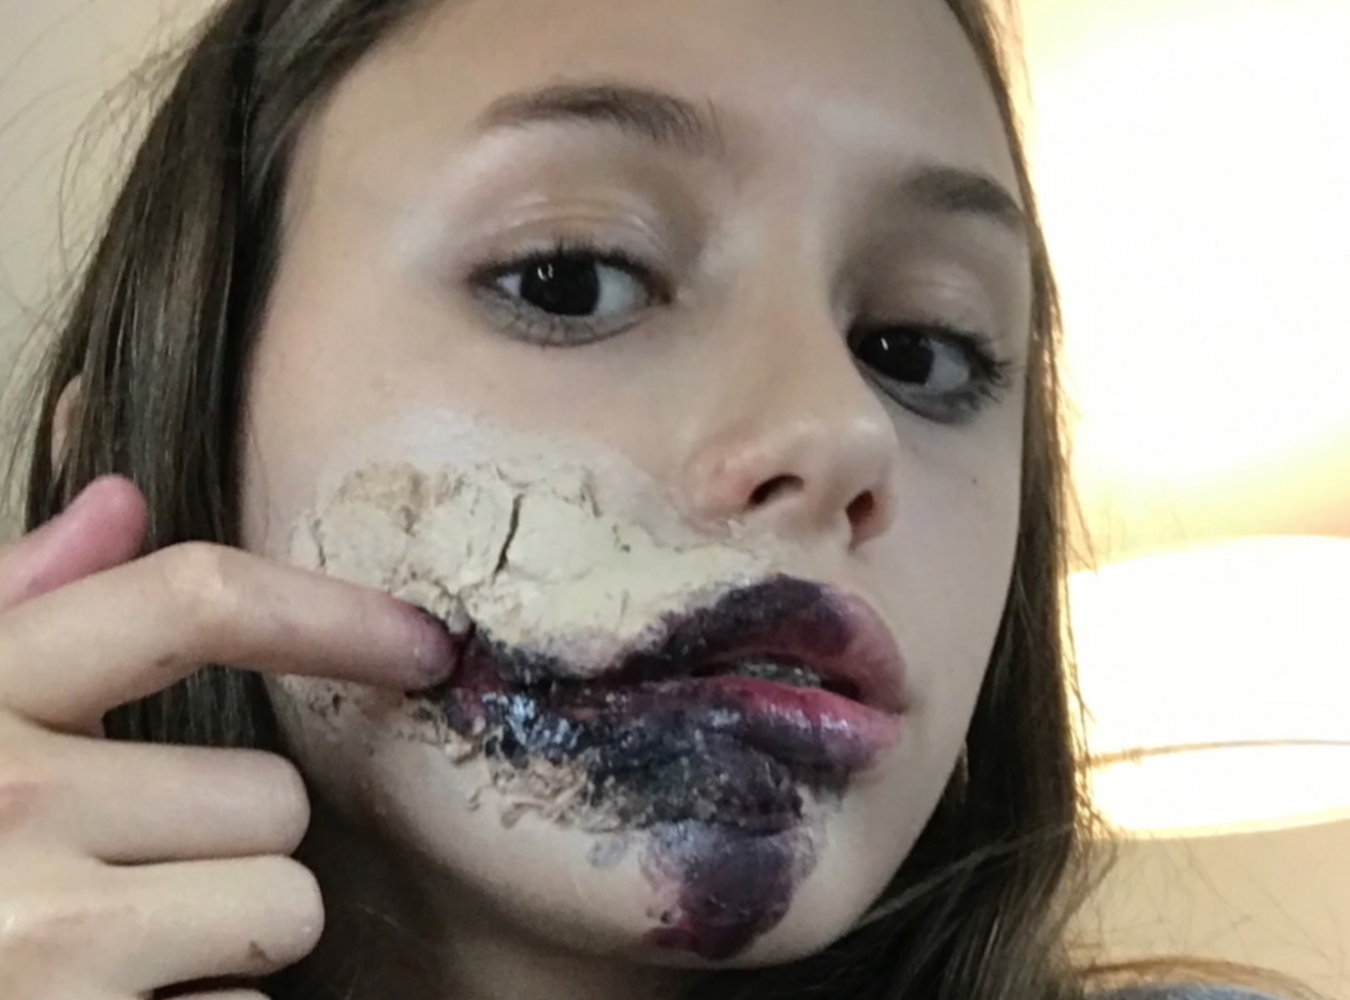 Amanda Kline explores the creepy side of makeup